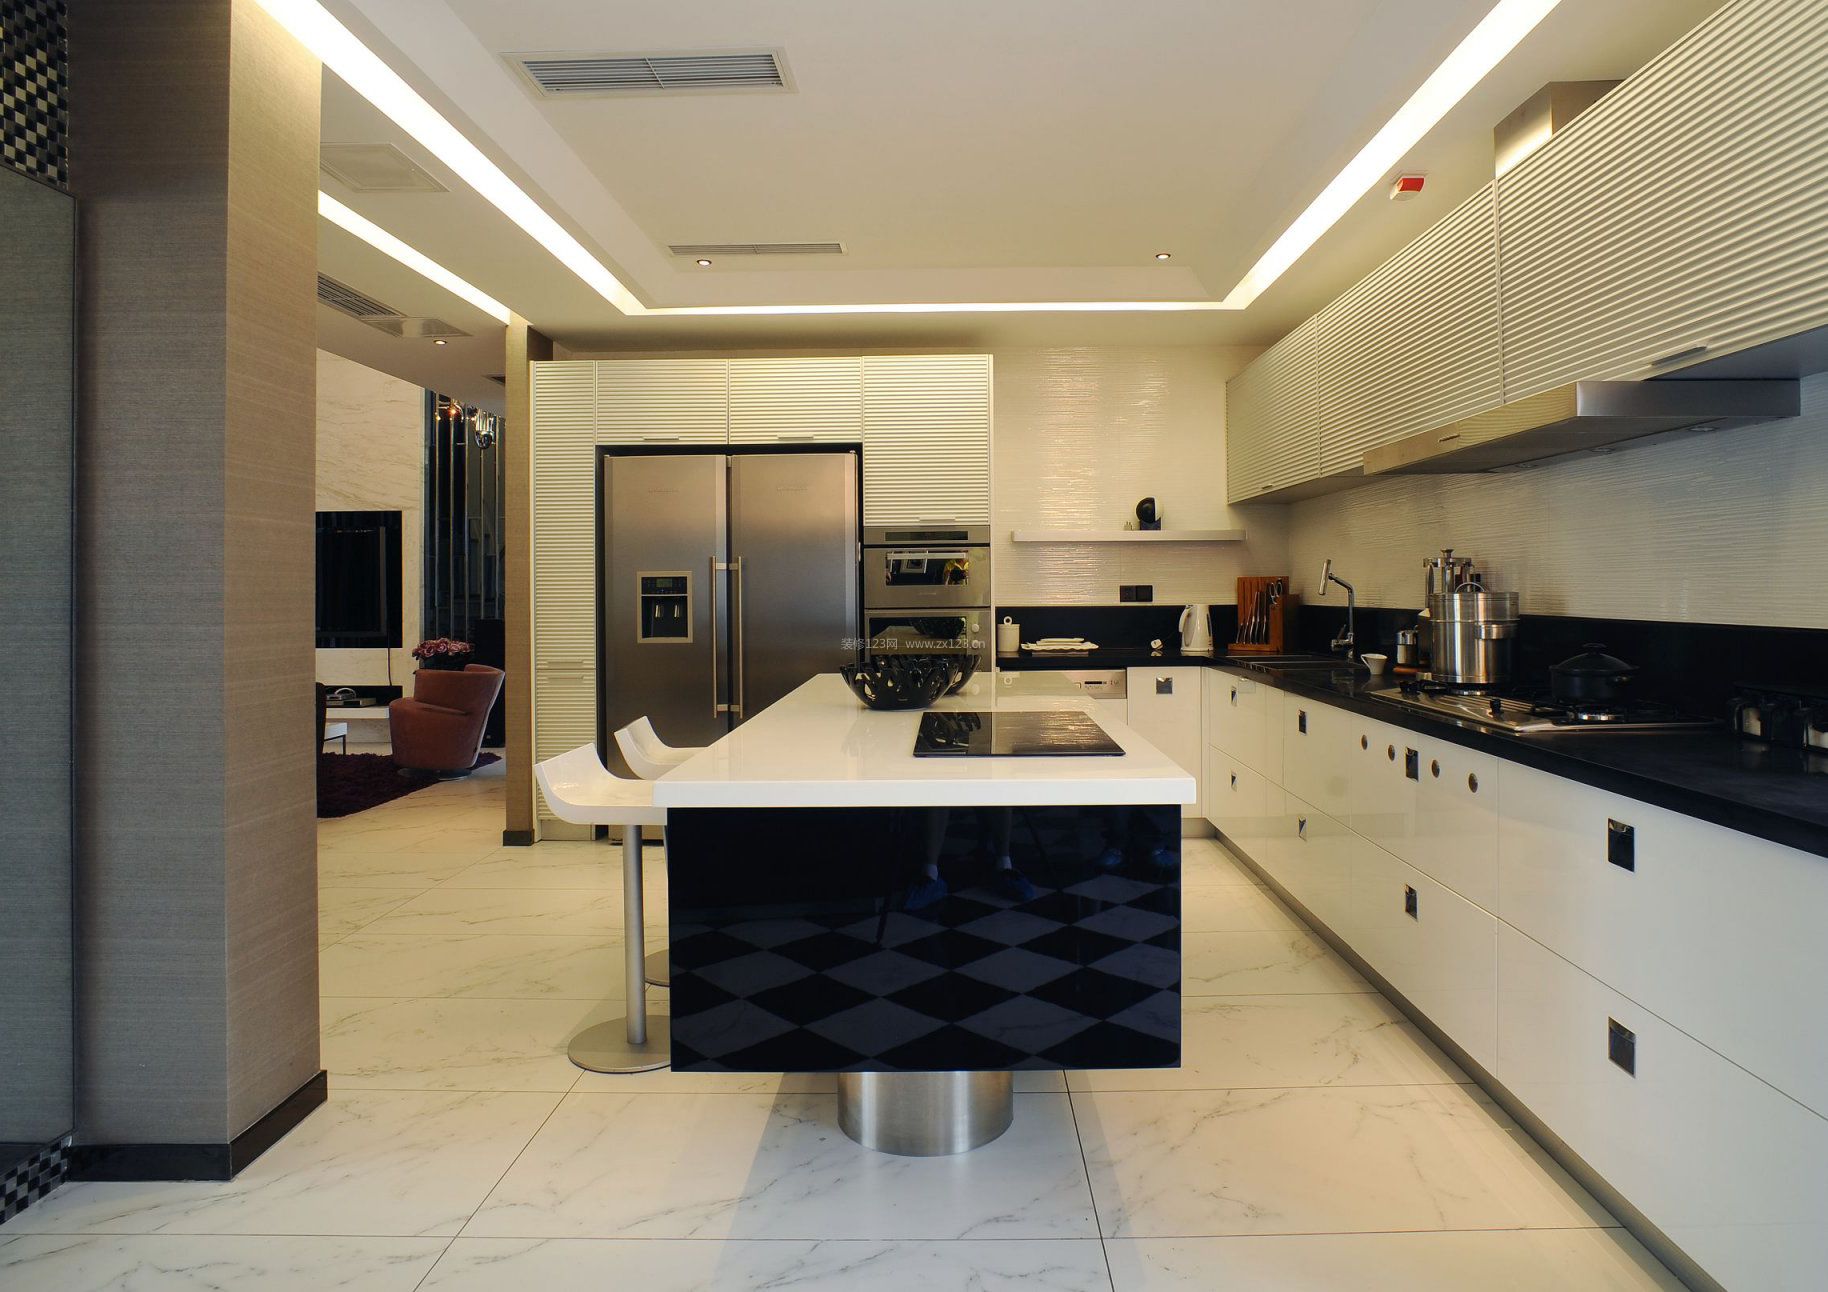 白领公寓厨房中岛装饰设计